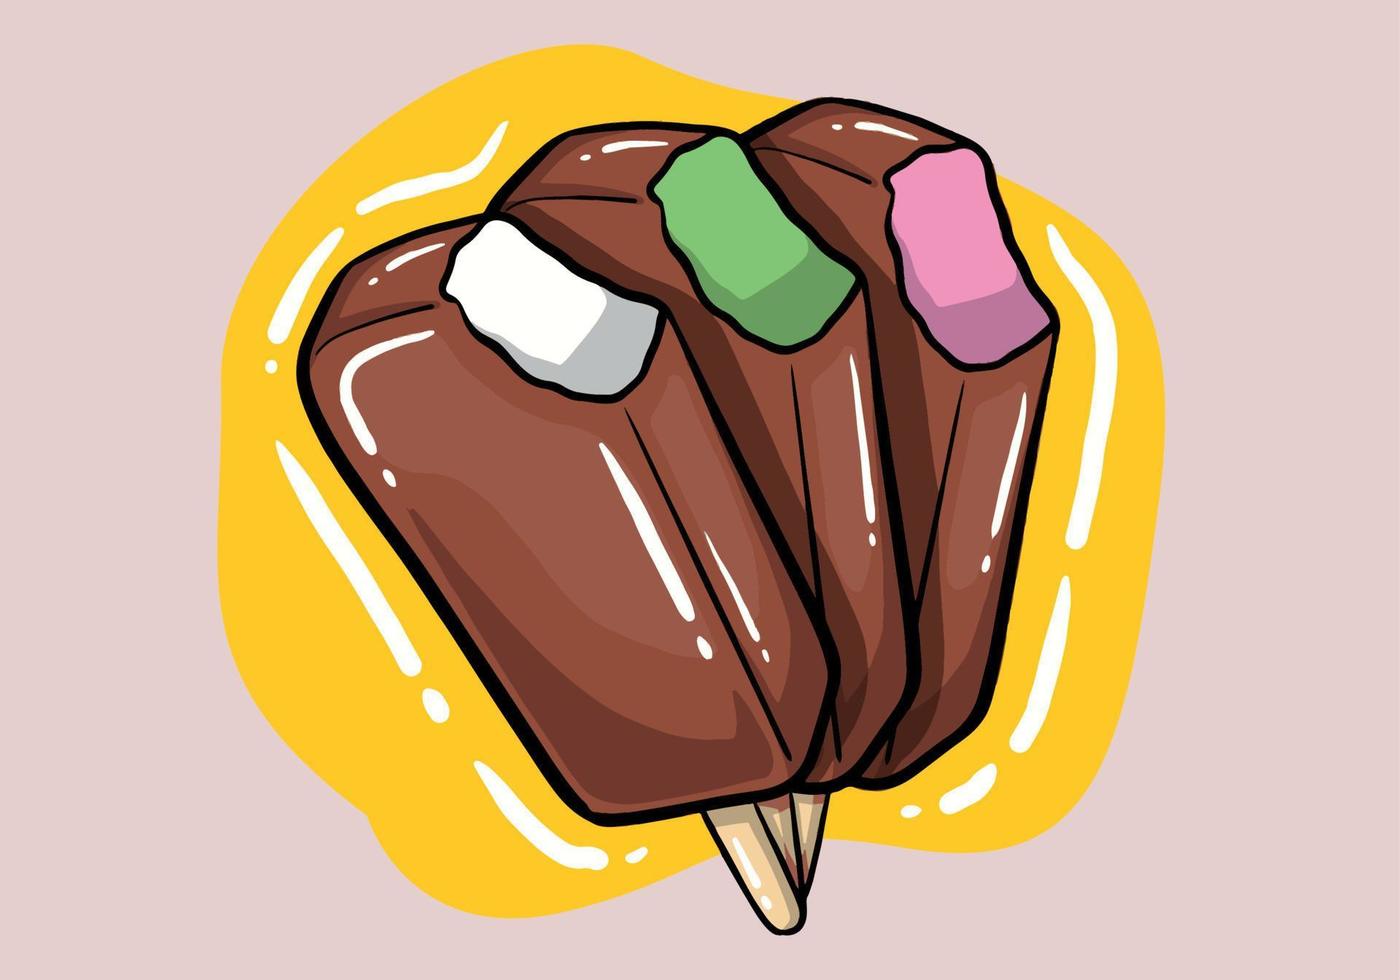 Erfrischung Eis Hand gezeichnet Vektor Satz, drei hell Schokolade Eis Cremes auf ein hölzern Stock im ein anders Farben